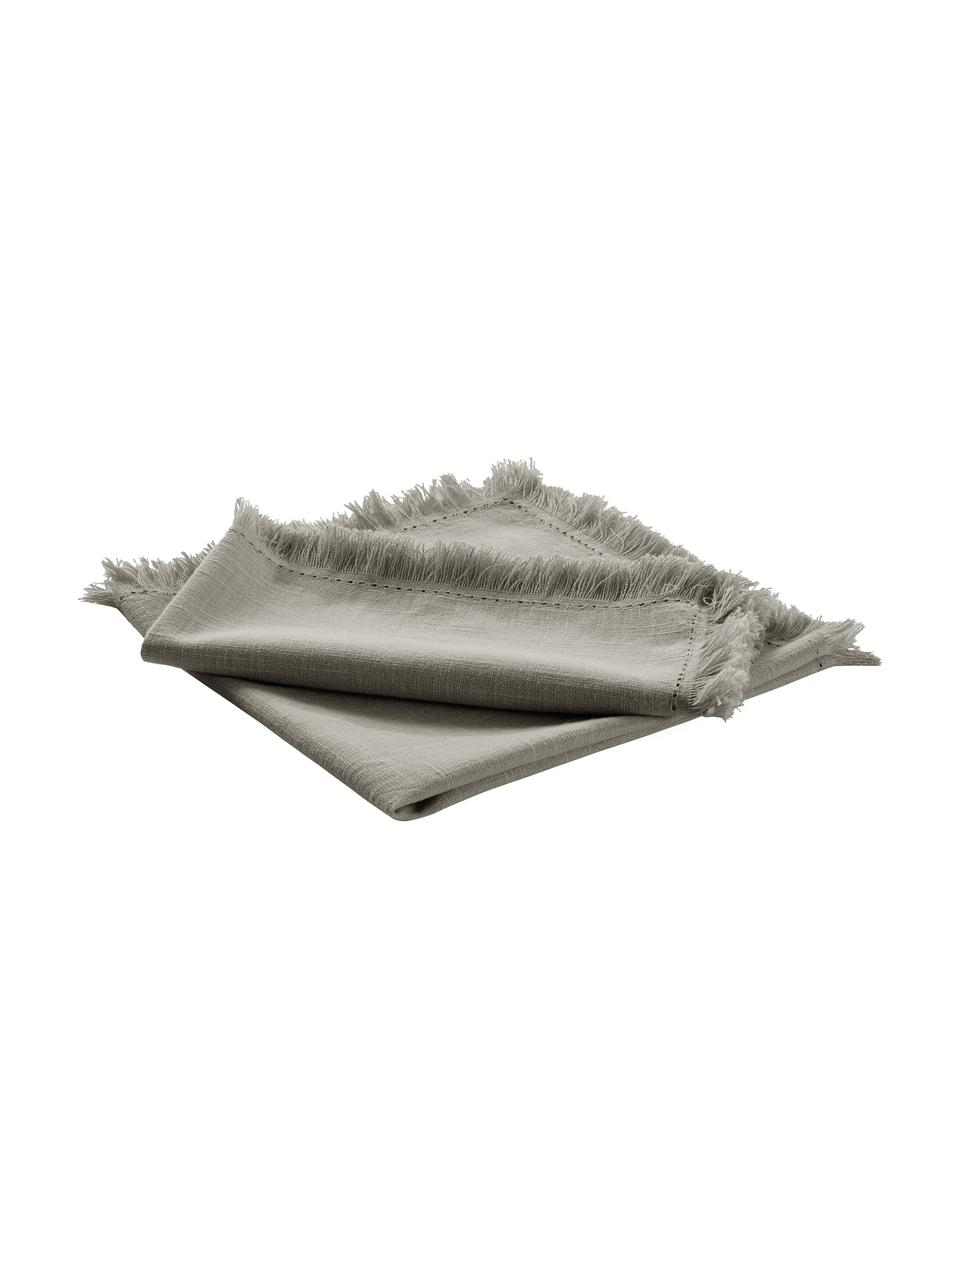 Serwetka z tkaniny Henley, 2 szt., 100% bawełna, Szarozielony, S 45 x D 45 cm